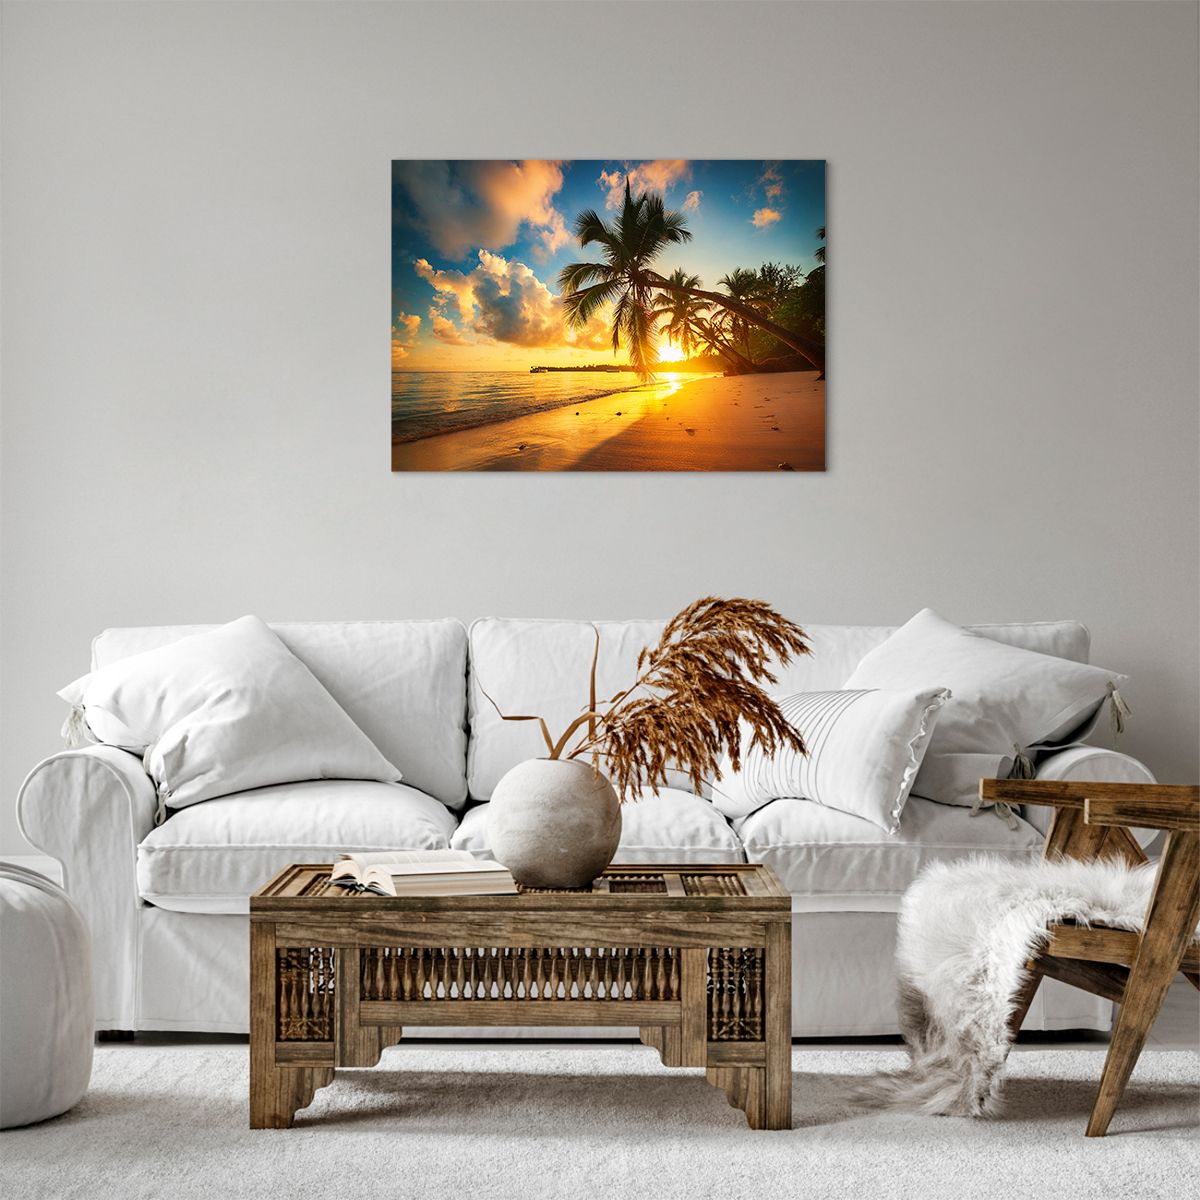 Bild auf Leinwand Landschaft, Bild auf Leinwand Kokusnuss-Palme, Bild auf Leinwand Meer, Bild auf Leinwand Strand, Bild auf Leinwand Der Sonnenuntergang